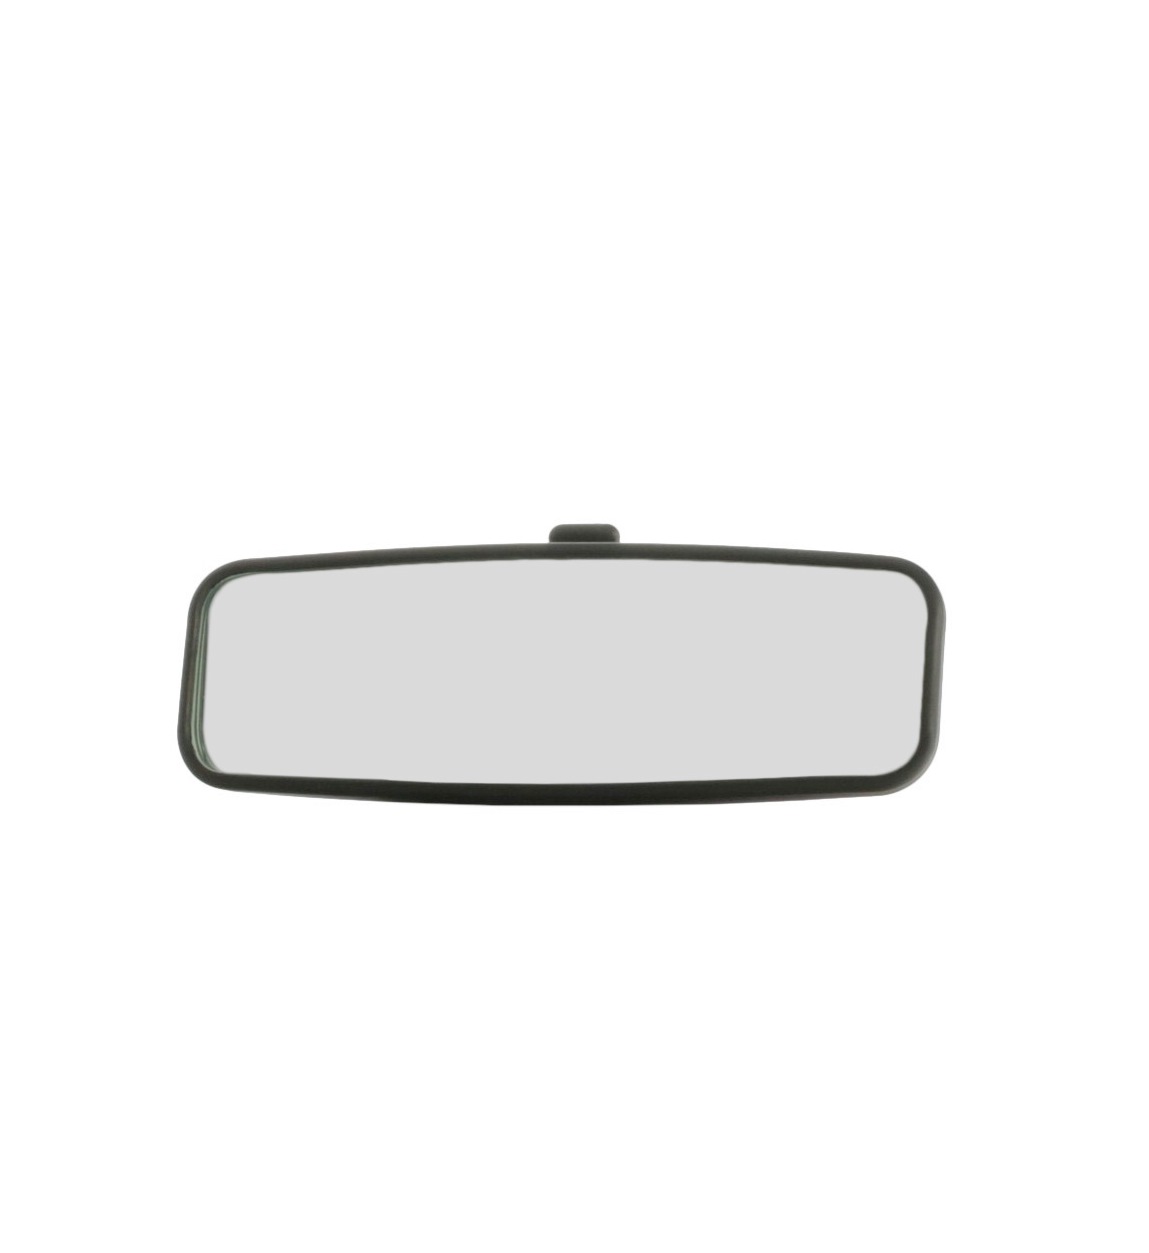 Specchio Specchietto Retrovisore Interno Per Auto Regolabile Universale 21x5.5cm 